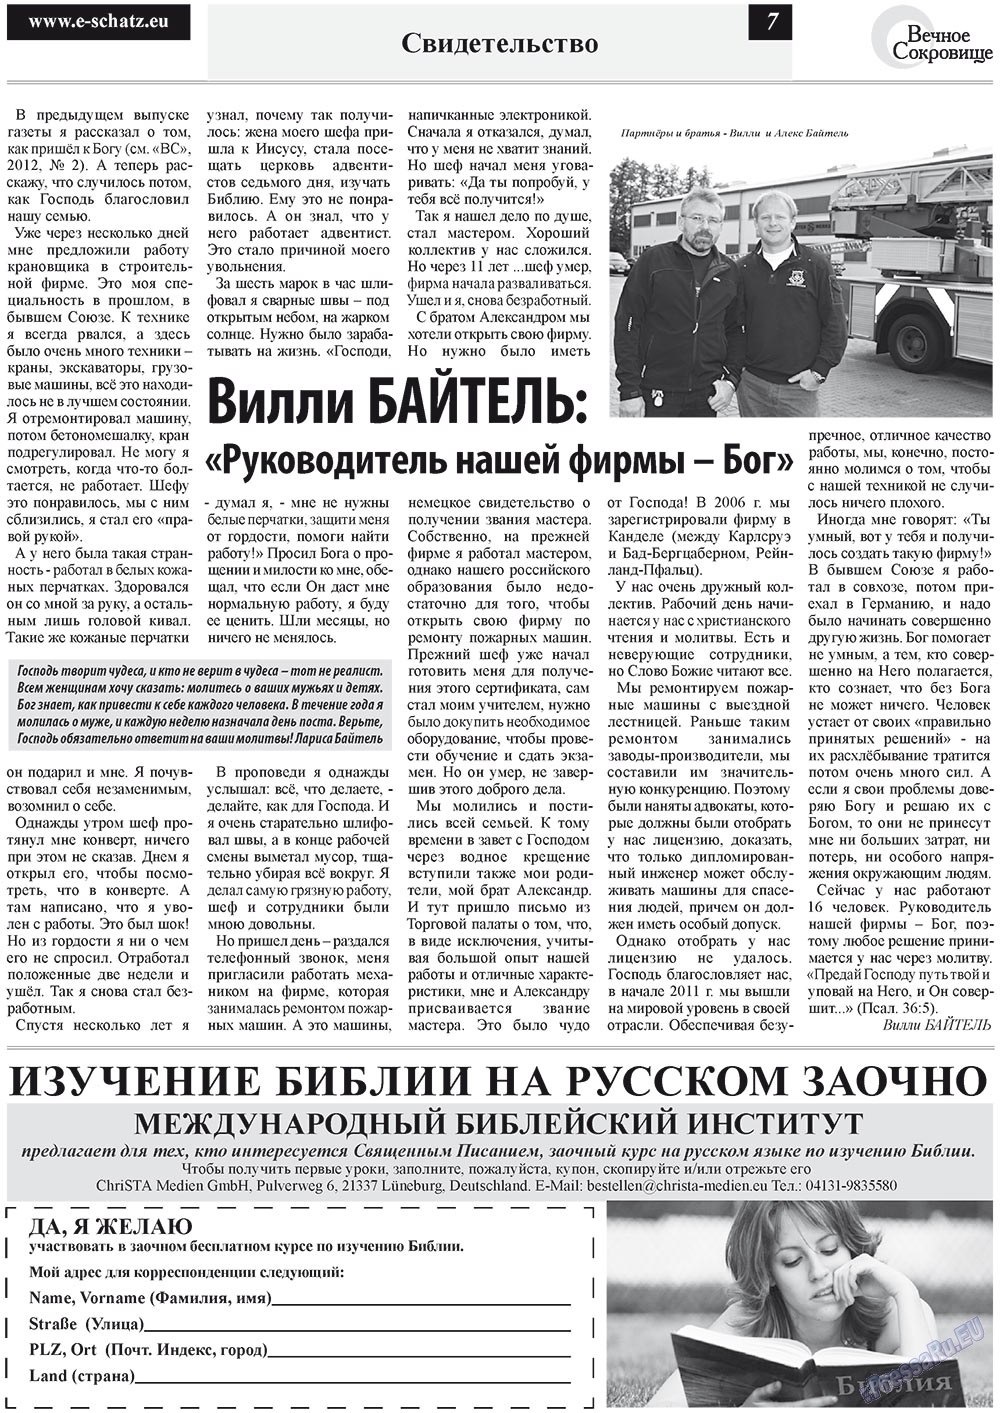 Вечное сокровище, газета. 2012 №3 стр.7